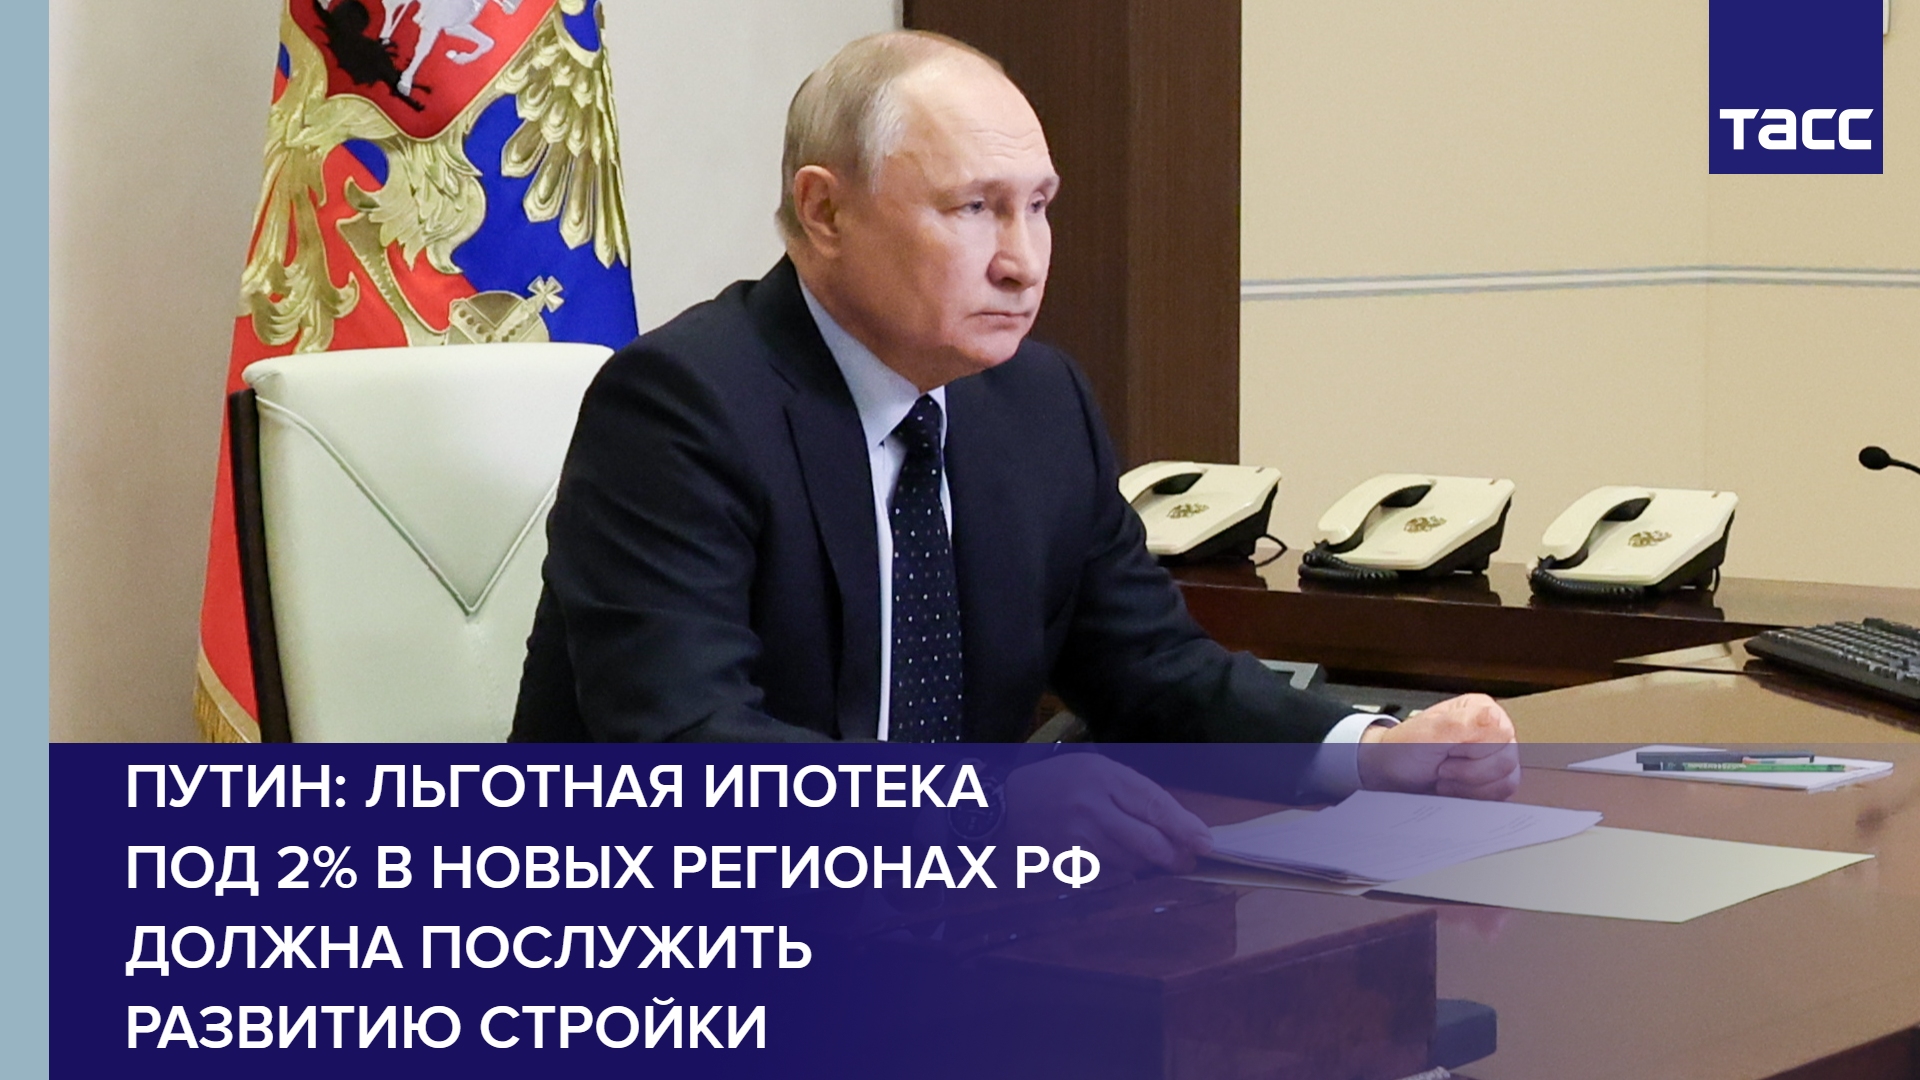 Путин: льготная ипотека под 2% в новых регионах РФ должна послужить развитию стройки